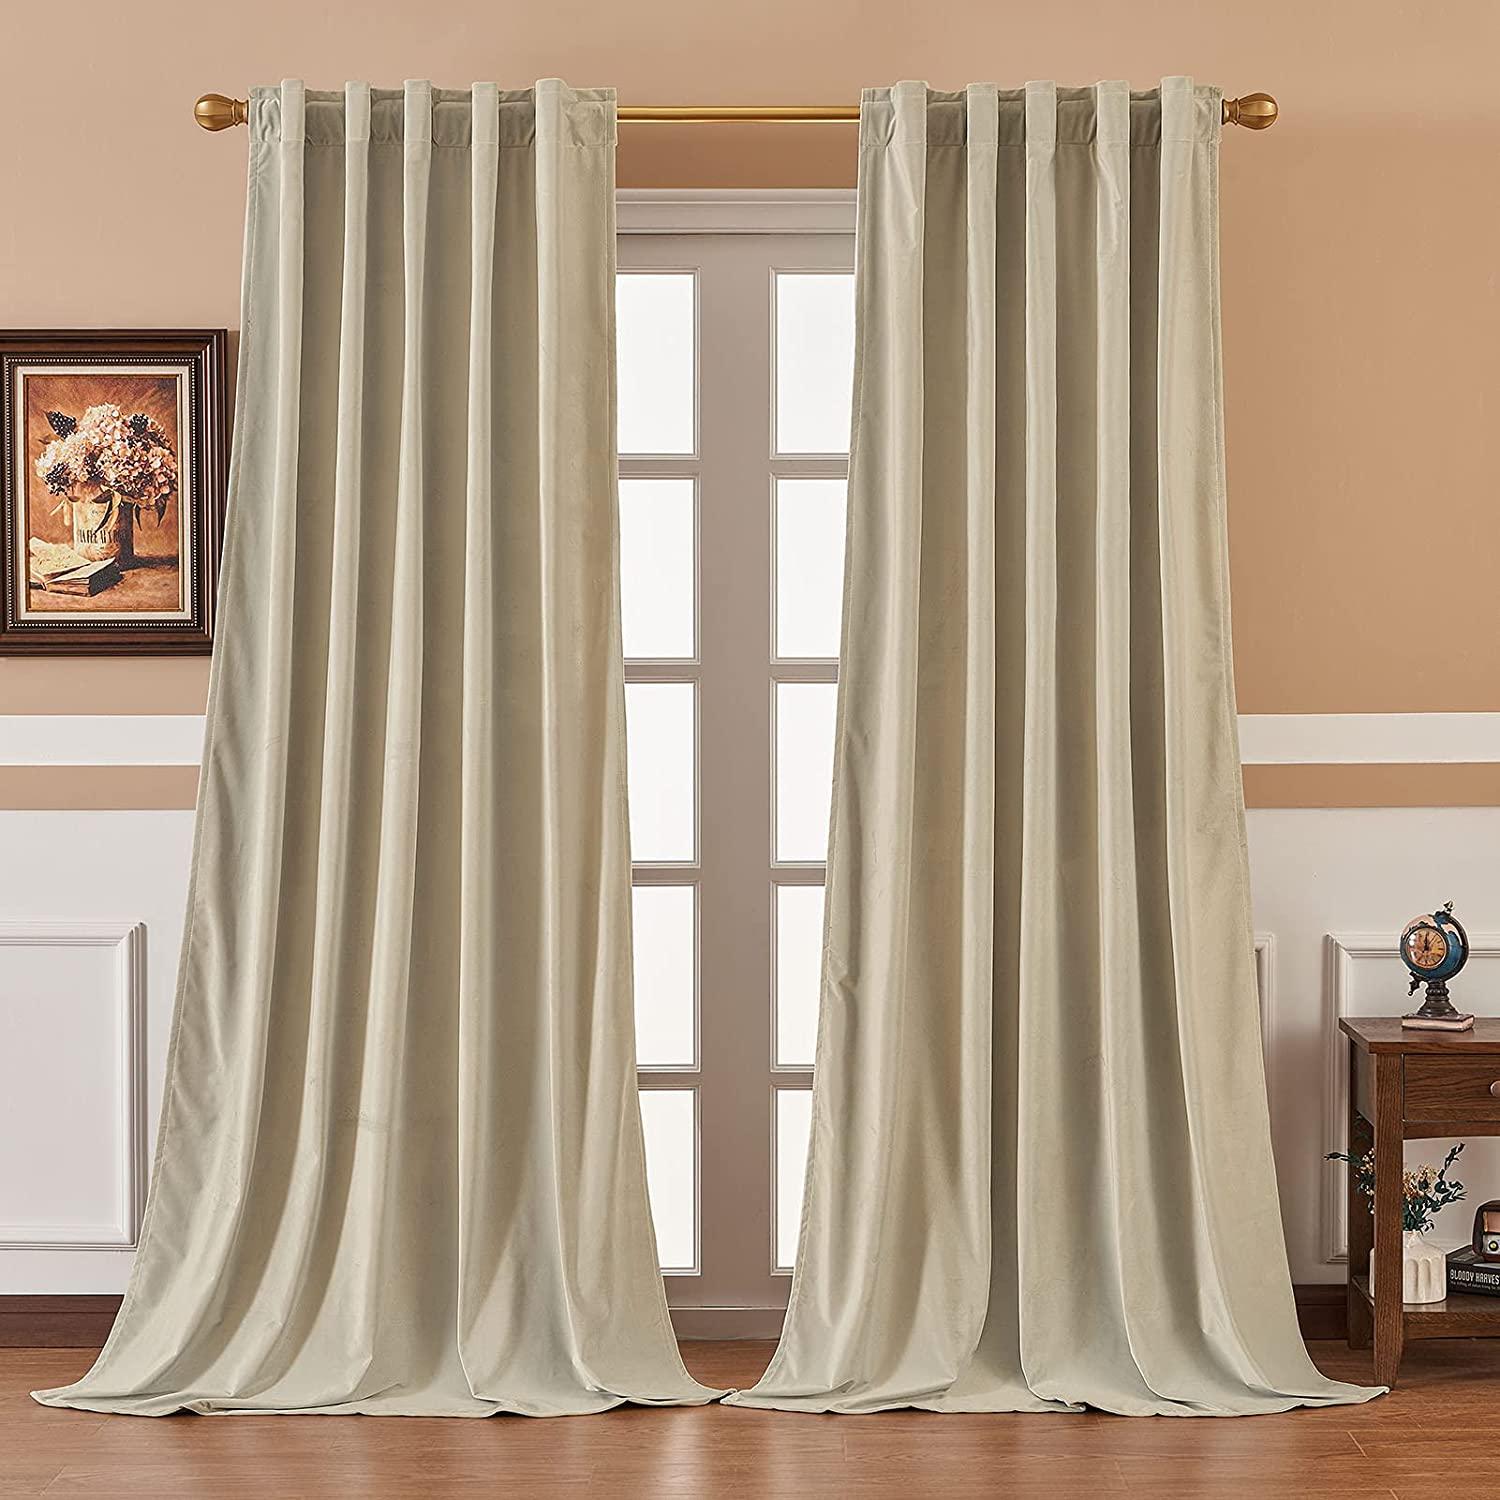 Diy Retro Velvet Curtains- Velvet Thermal Blackout Curtains For Living Room Bedroom,1 Panel - Topfinel